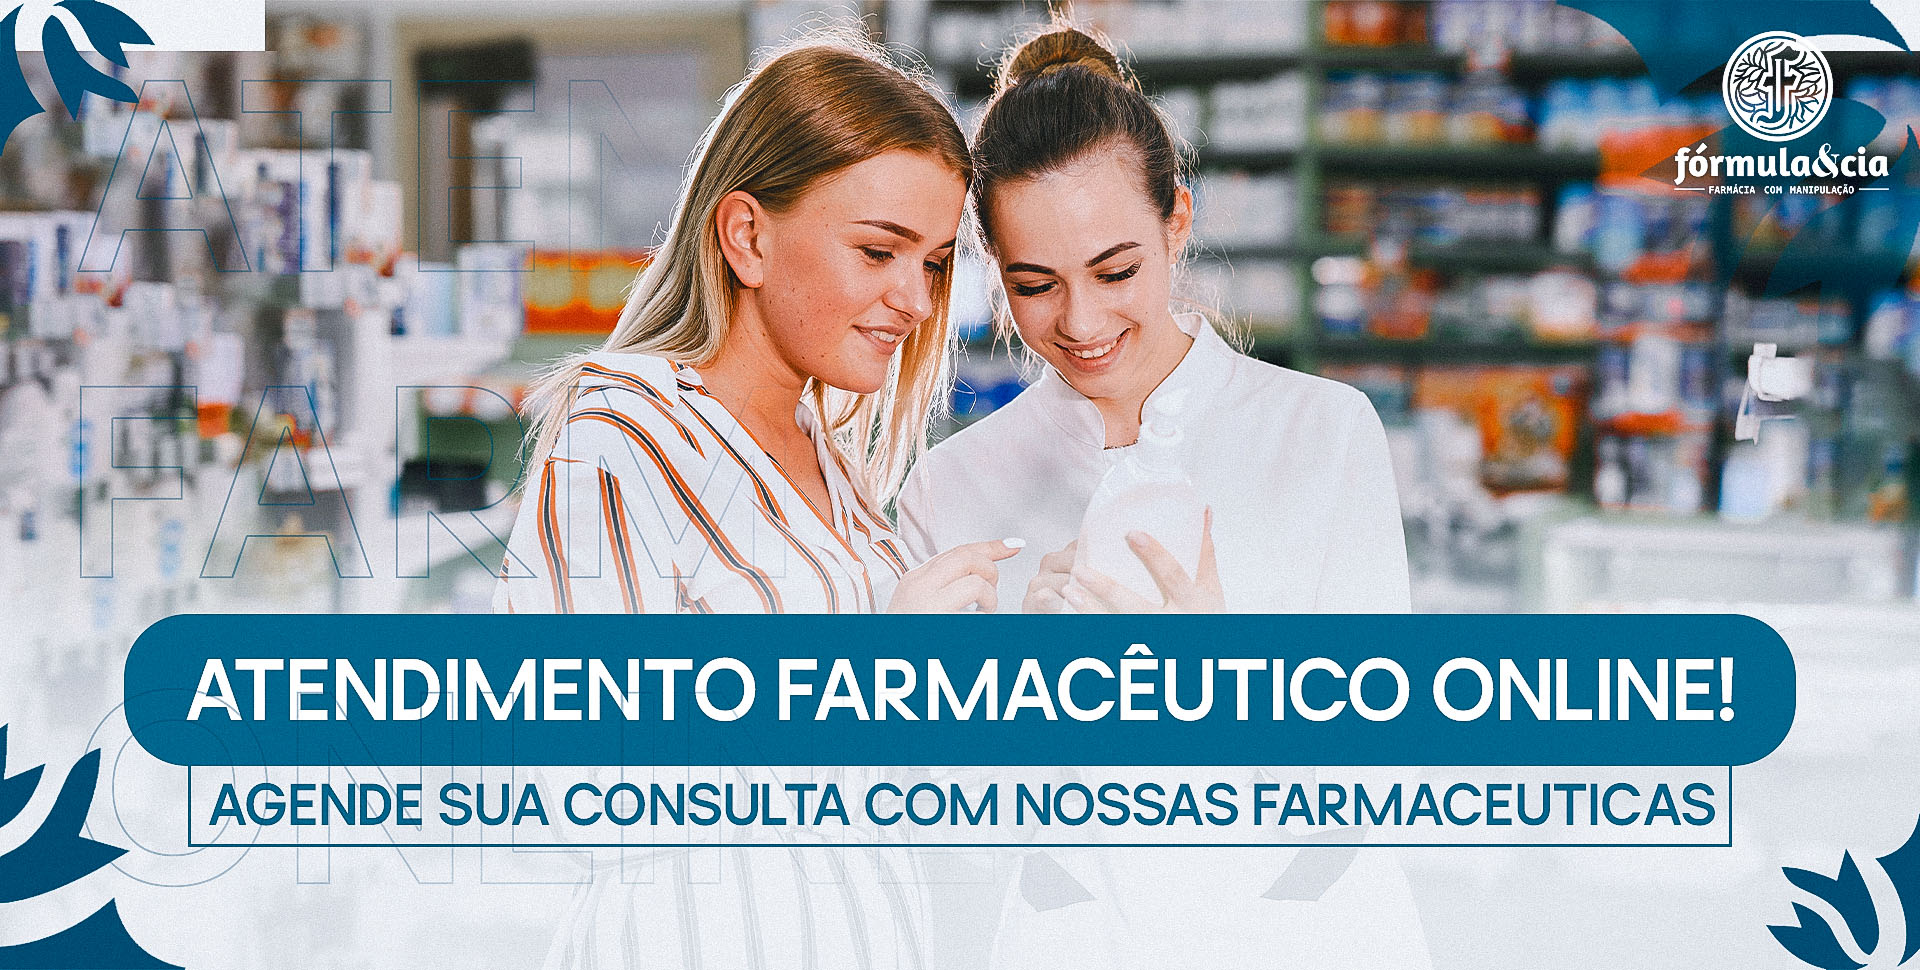 Grupo busca associados para expandir rede de farmácias - Hora Campinas